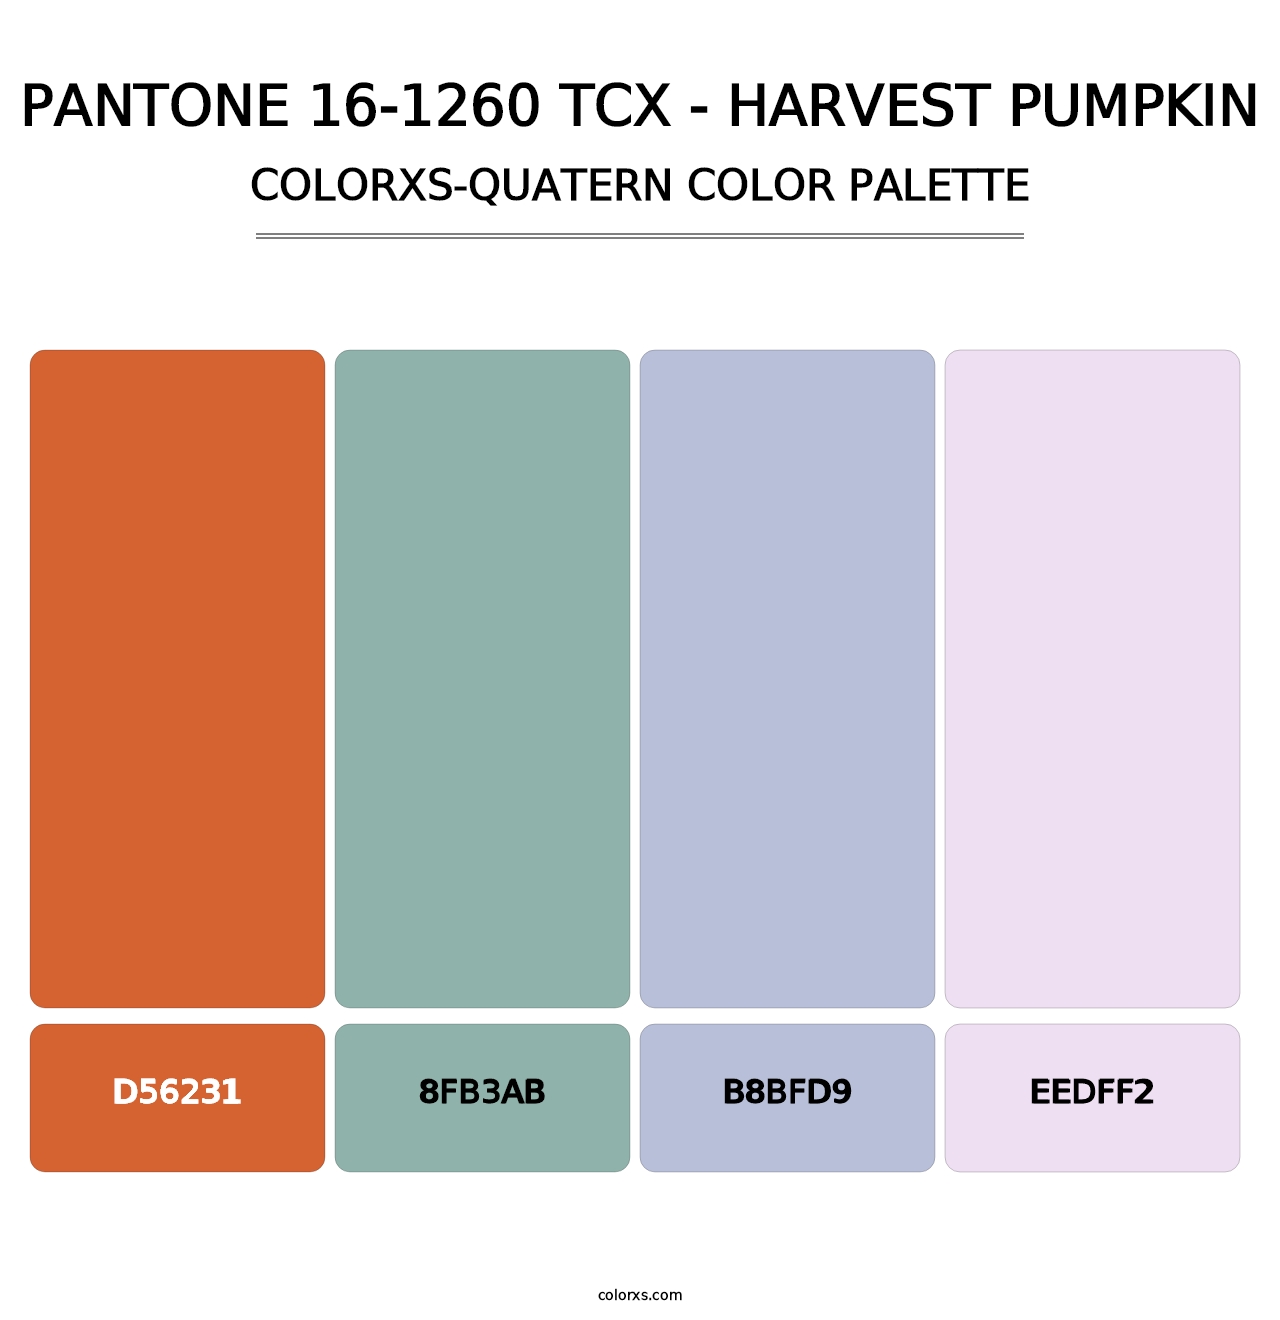 PANTONE 16-1260 TCX - Harvest Pumpkin - Colorxs Quatern Palette